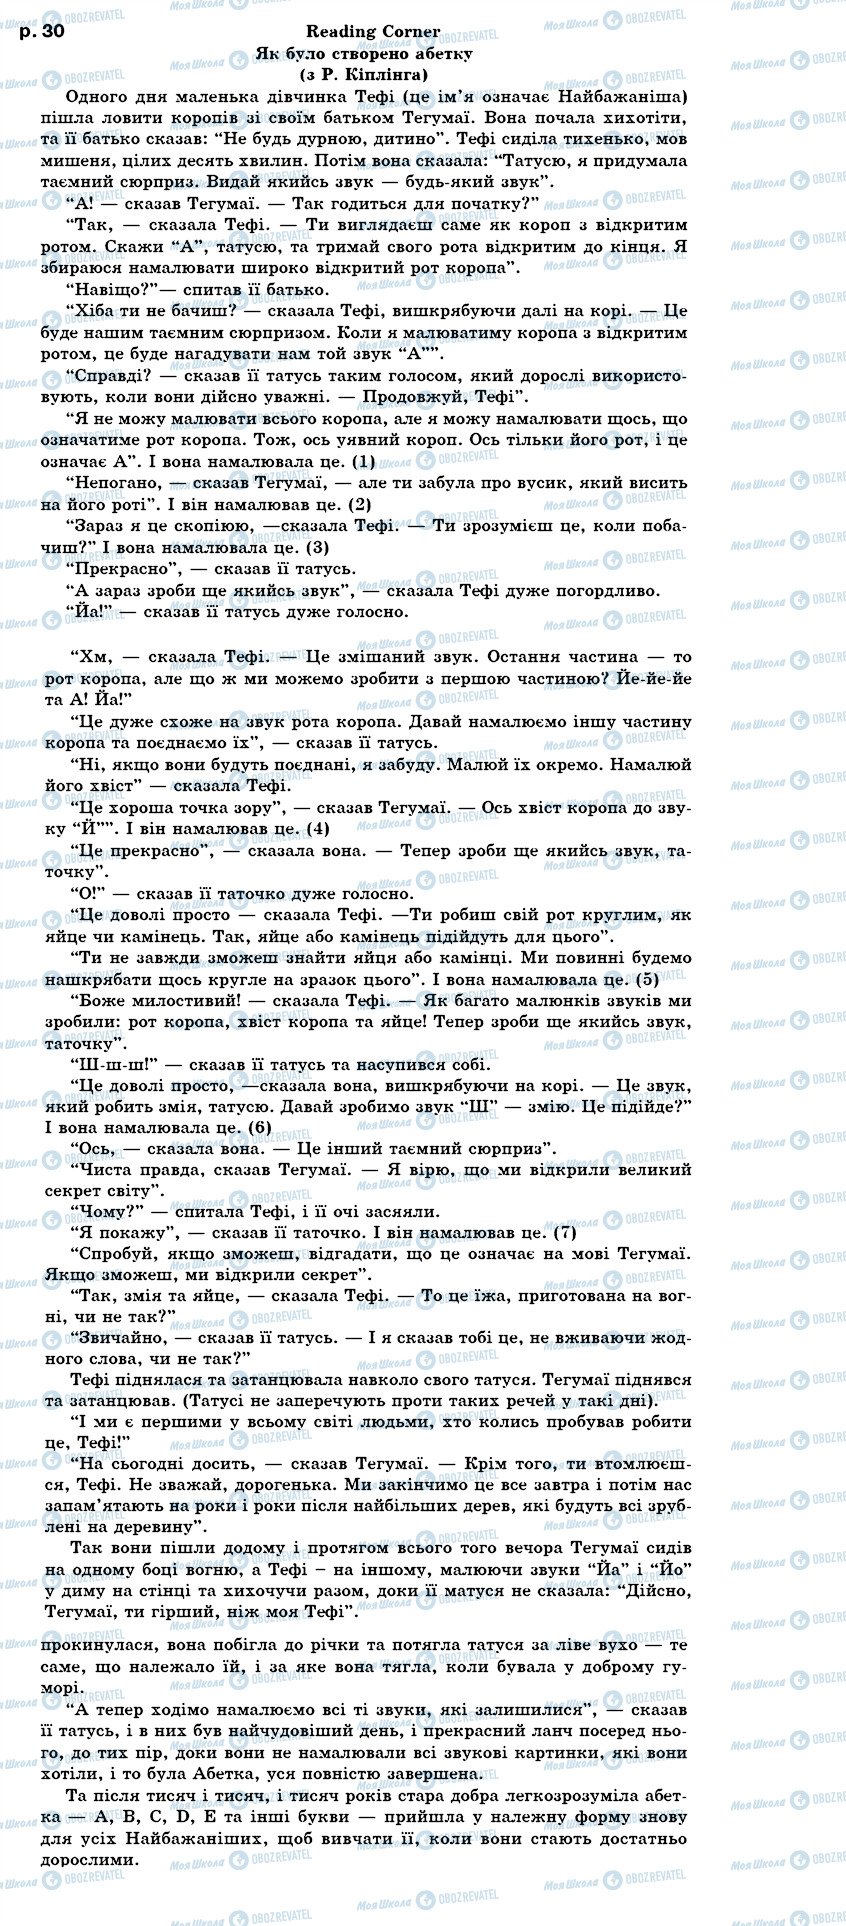 ГДЗ Англійська мова 7 клас сторінка text p30